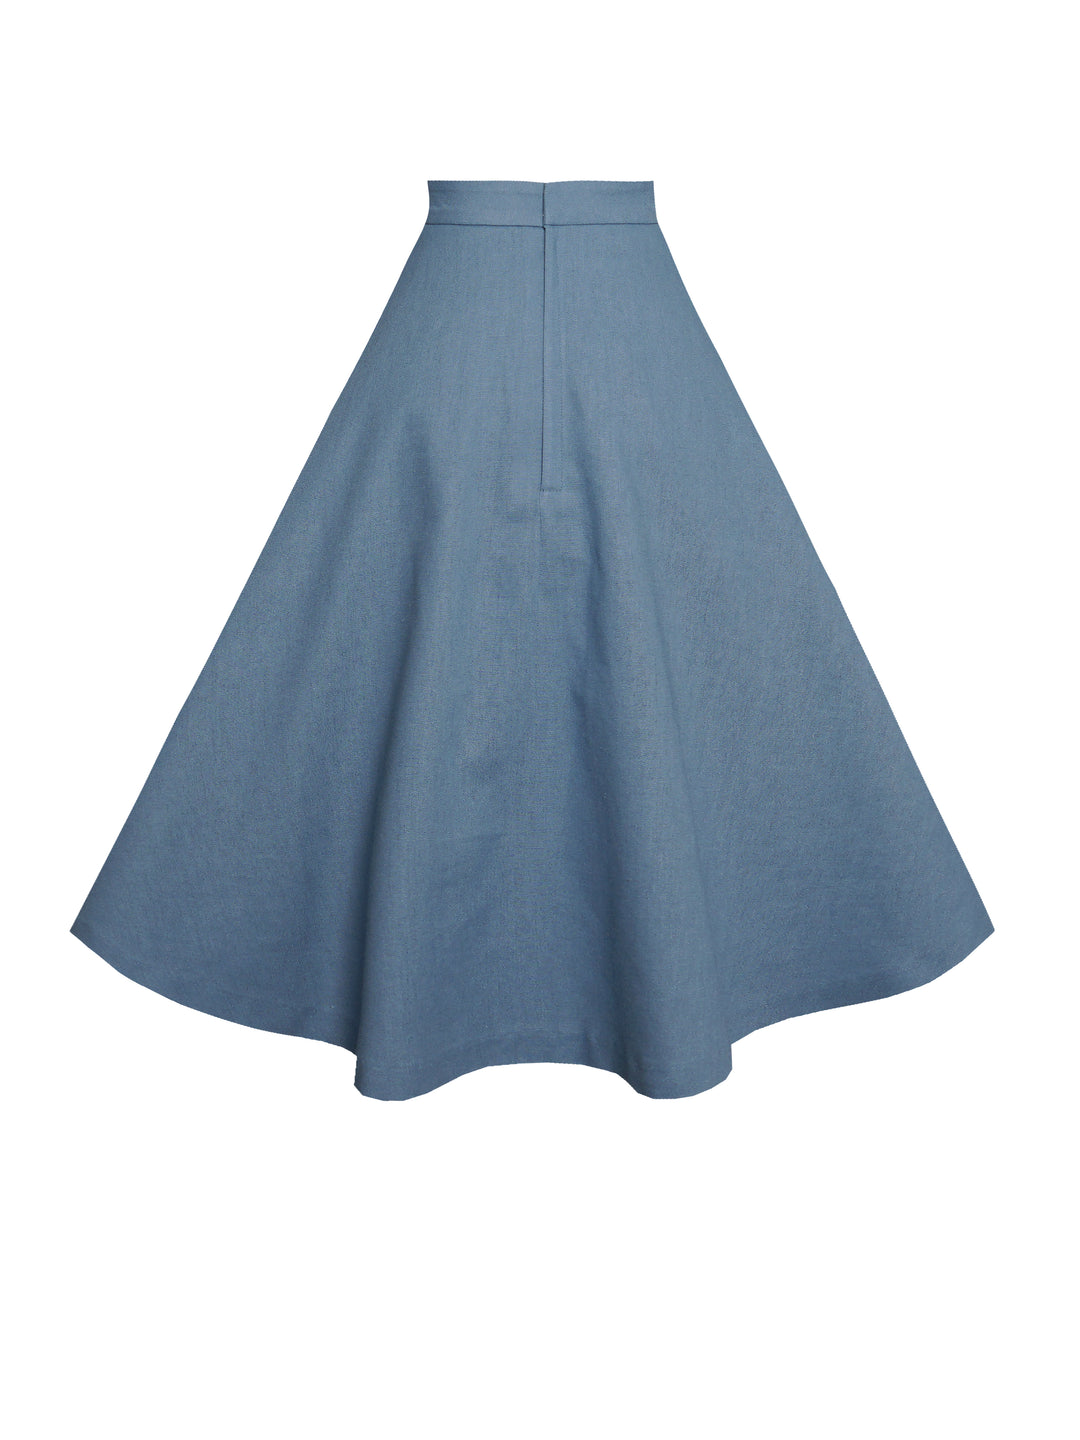 MTO - Lilian Skirt in Carolina Blue Linen